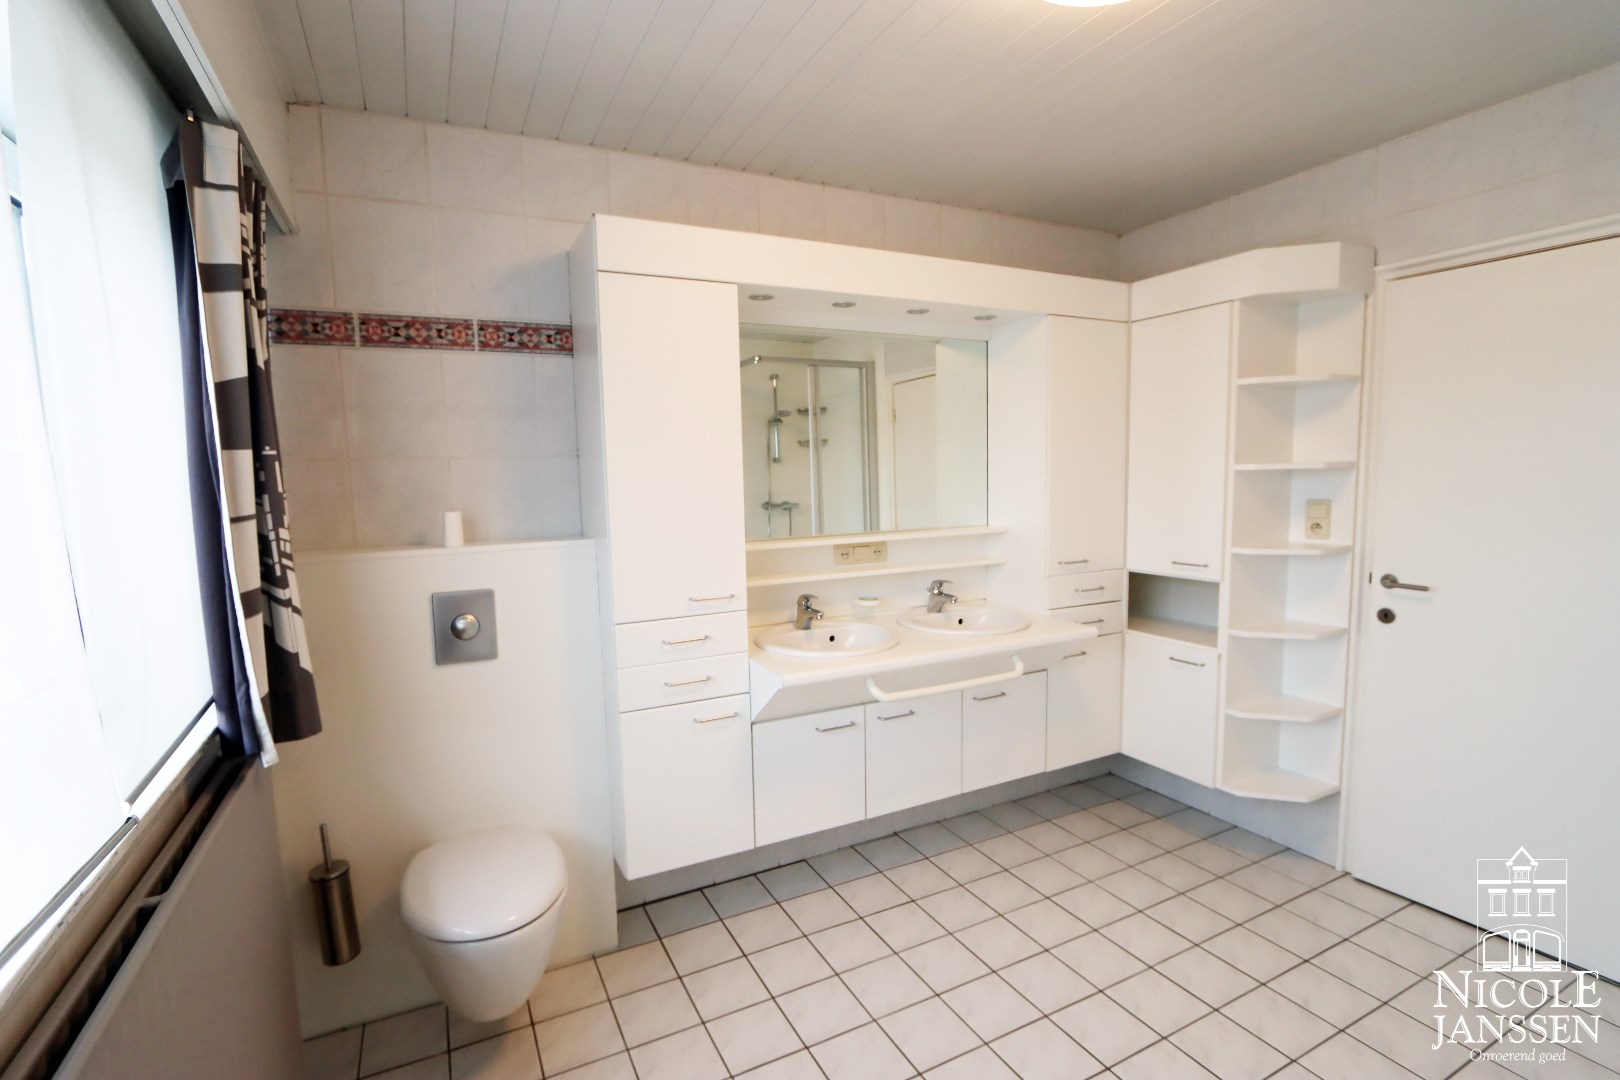 Badkamer met douche, ligbad, toilet en twee wastafels